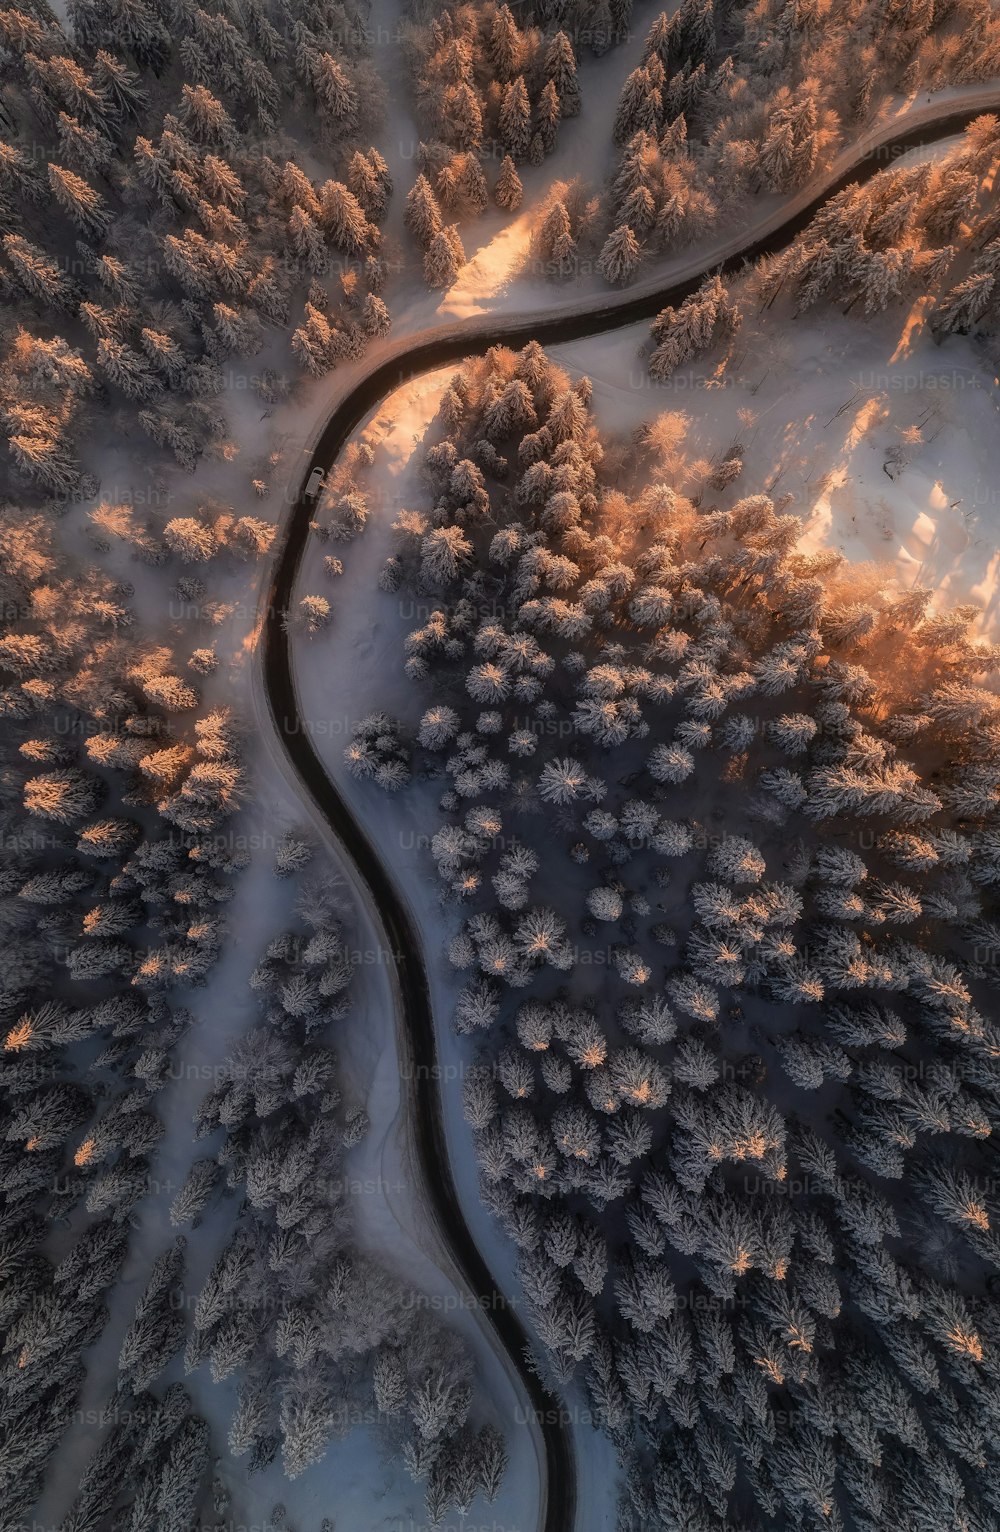 Un camino sinuoso en medio de un bosque cubierto de nieve